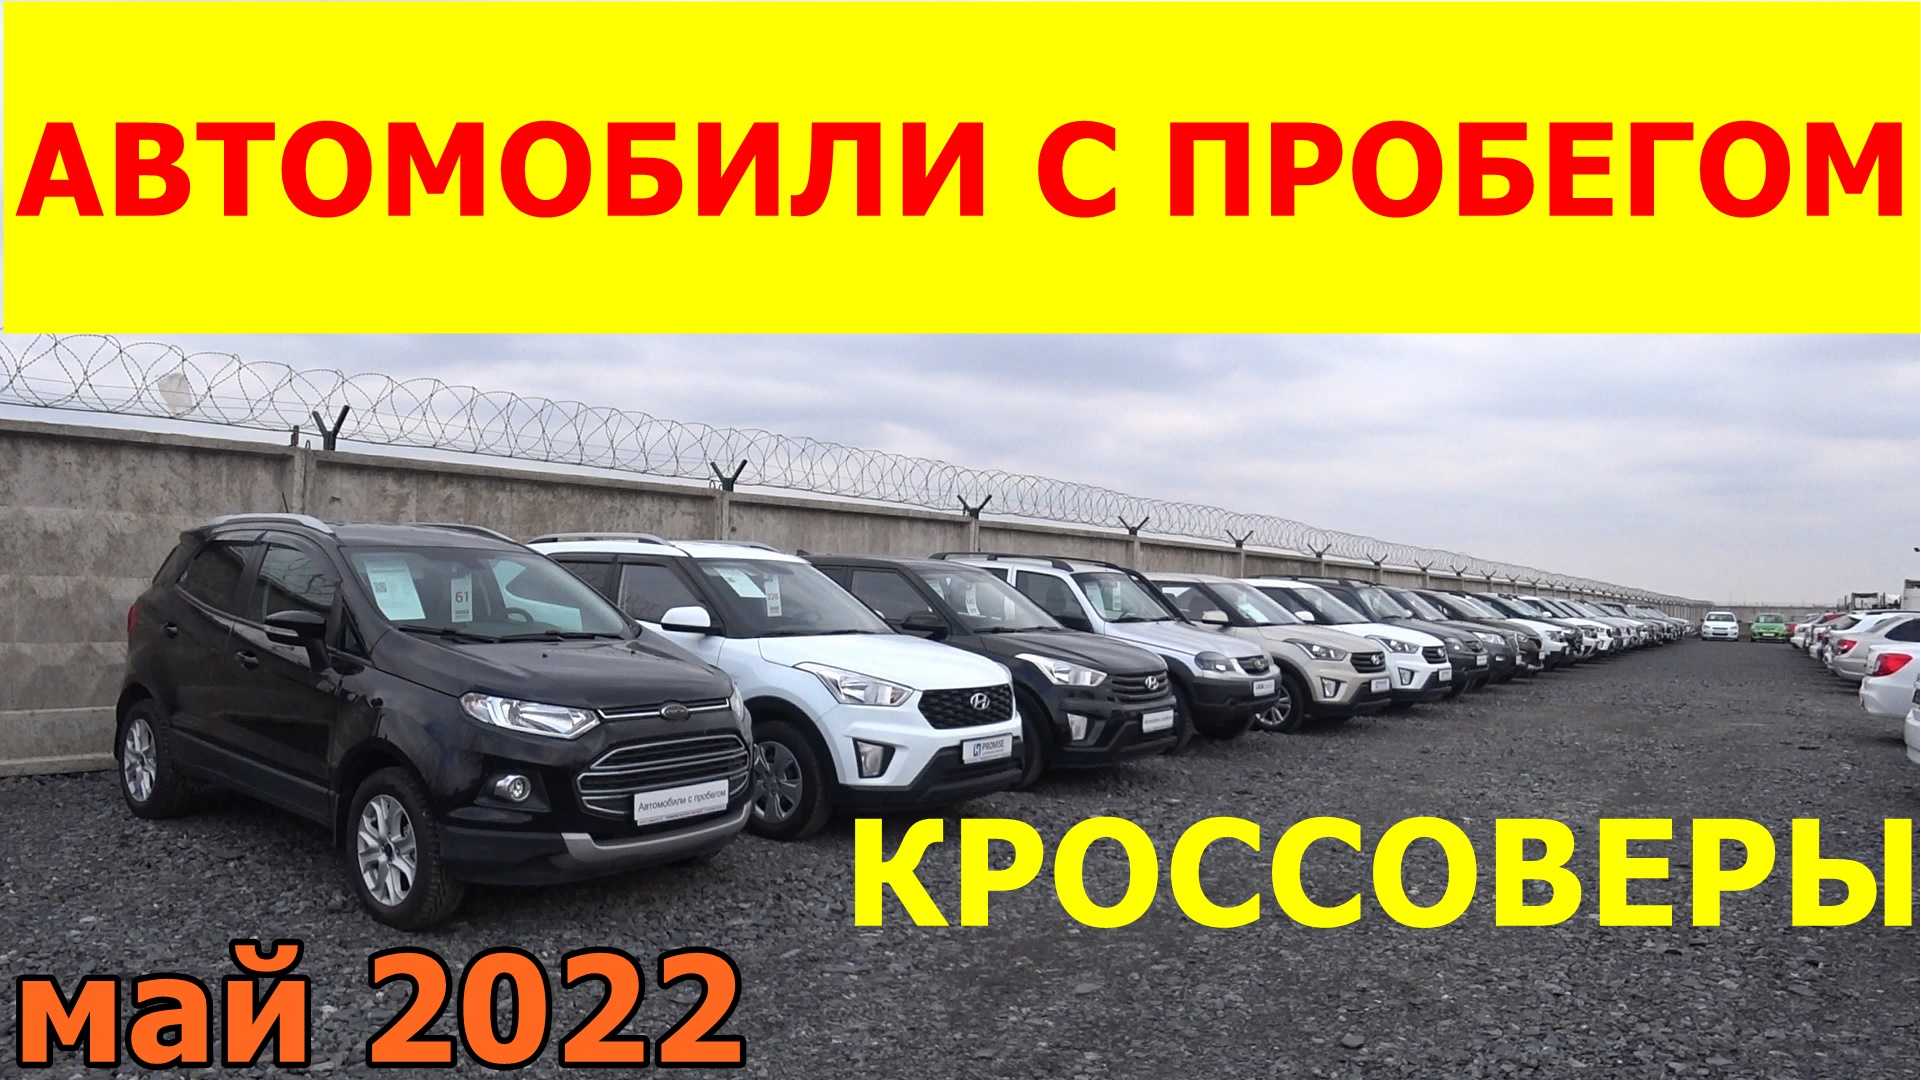 Лучшие новые модели автомобилей стоимостью до 1,2 миллиона рублей в 2020 году. новые автомобили до 1200000 рублей